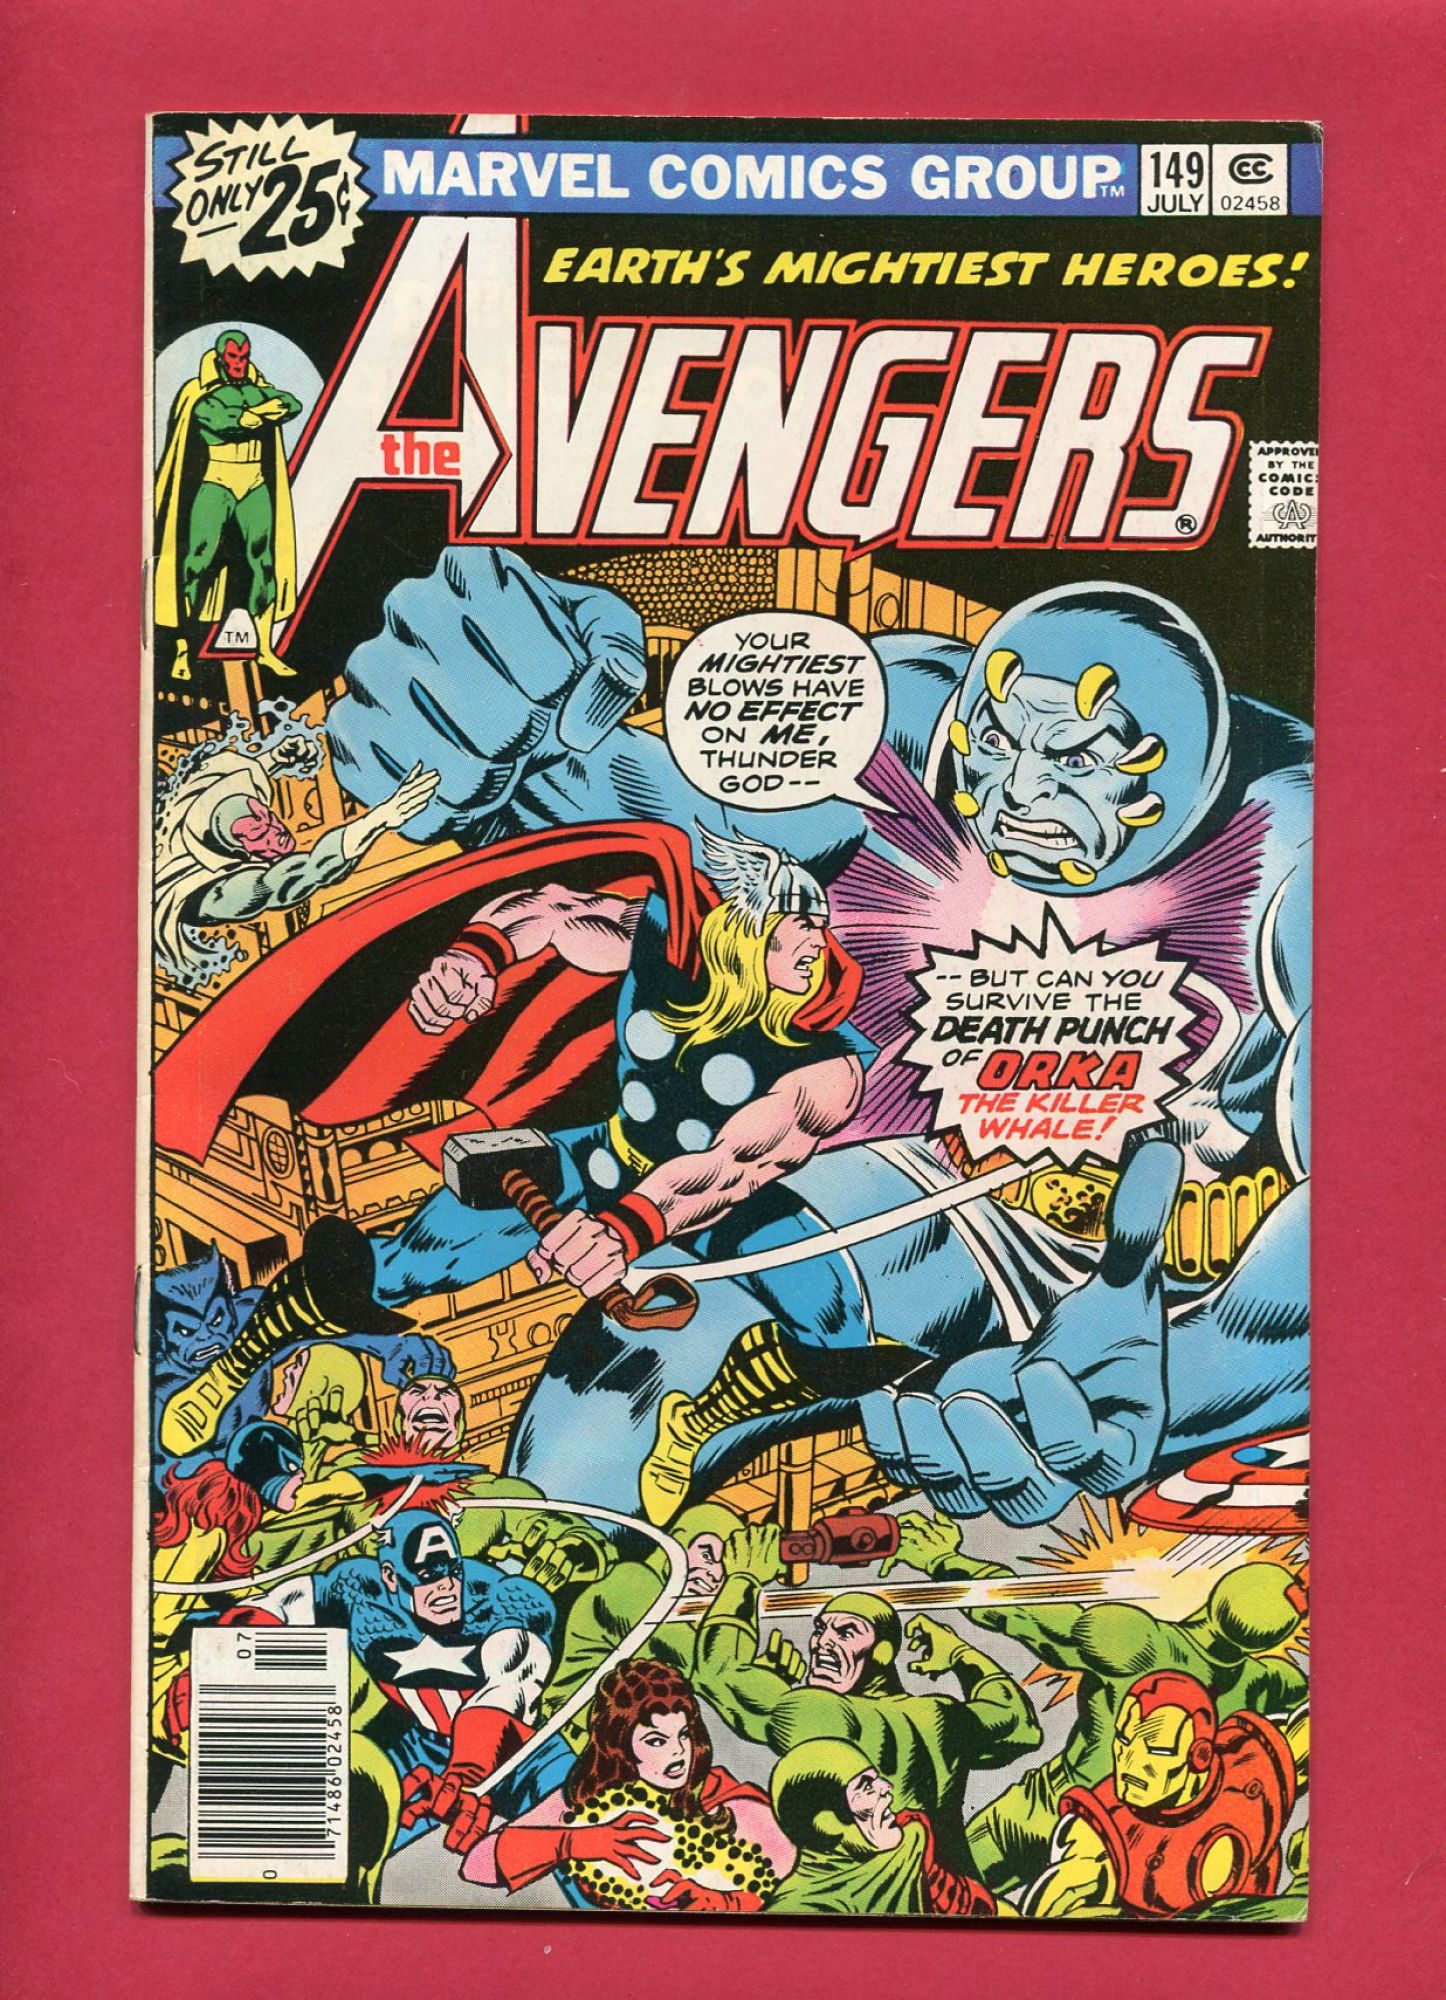 Avengers #149, Jul 1976, 8.5 VF+